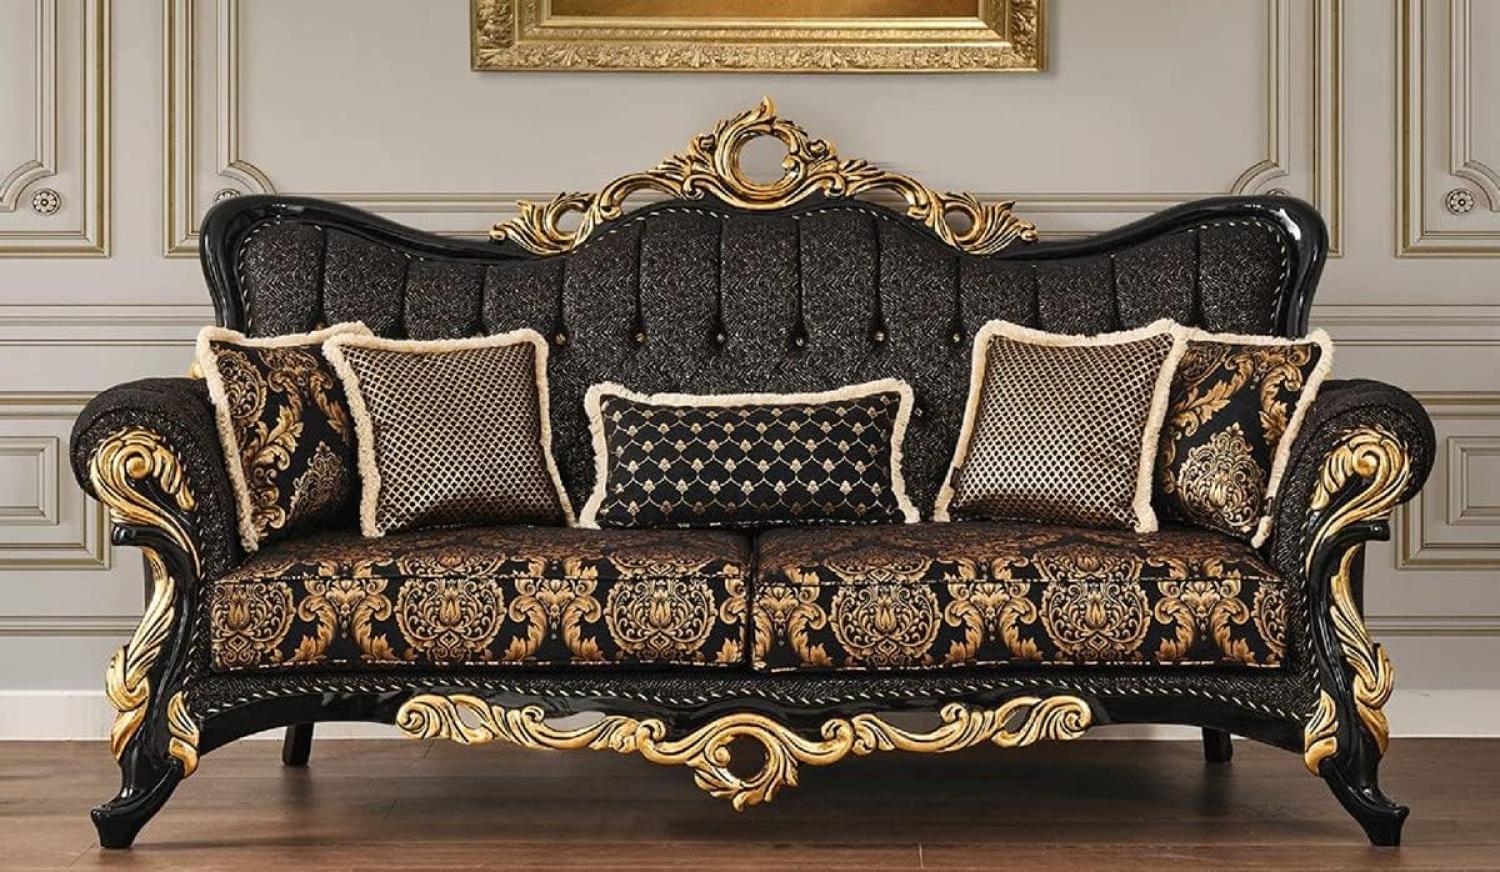 Casa Padrino Luxus Barock Sofa Schwarz / Gold 230 x 80 x H. 126 cm - Prunkvolles Wohnzimmer Sofa mit elegantem Muster und dekorativen Kissen - Barock Wohnzimmer Möbel Bild 1